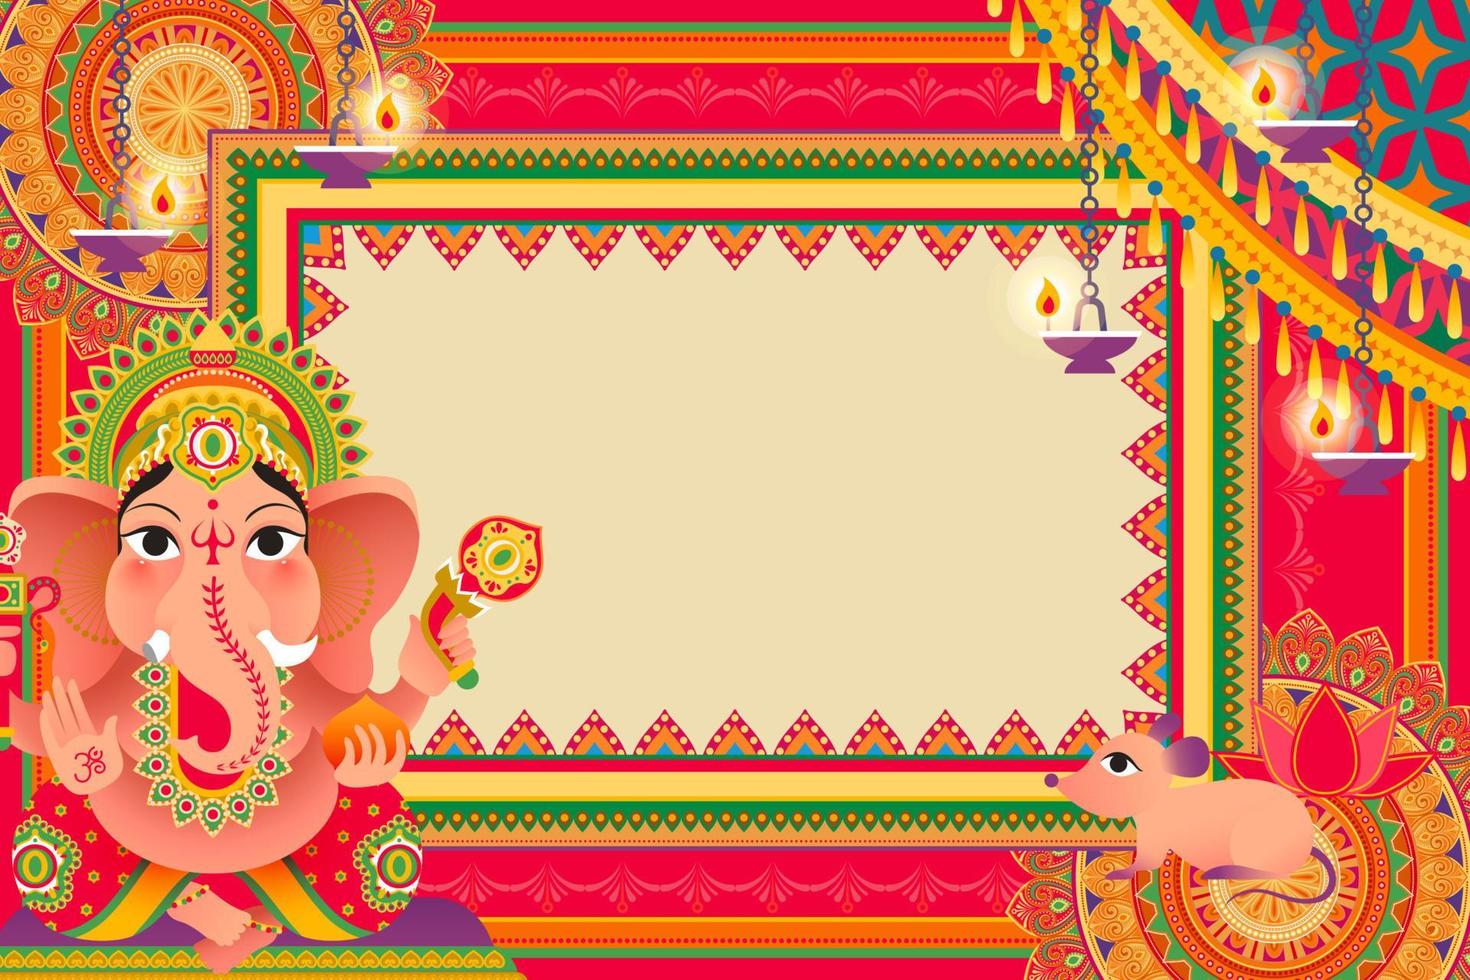 Gorgeous Ganesh Chaturthi festival background design with Hindu god Ganesha vector